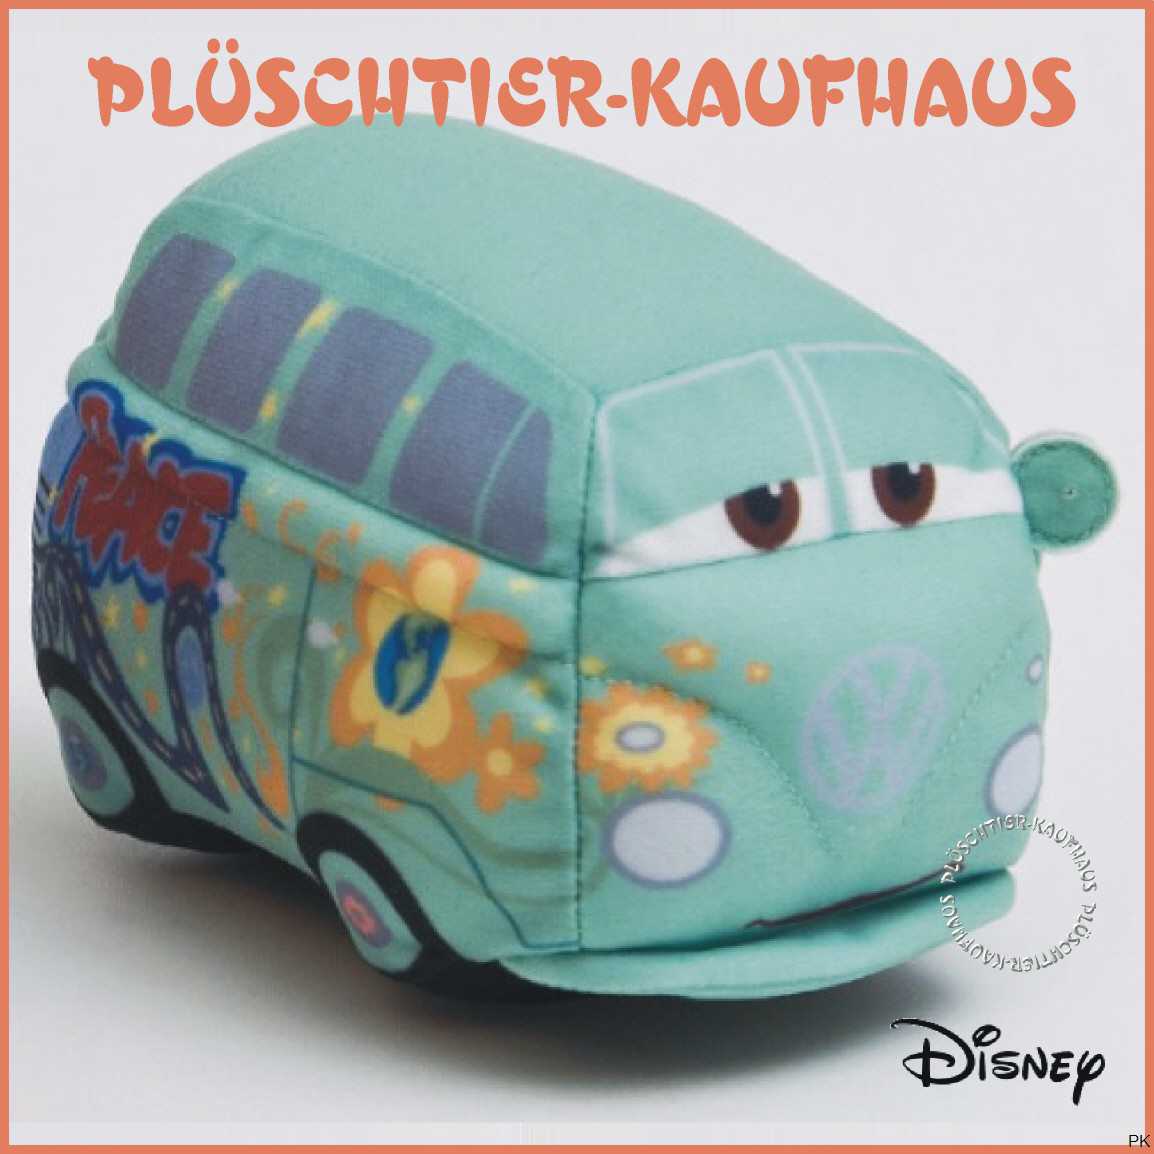 https://www.plueschtier-kaufhaus.de/mobile/plueschtier/images/jt1000397thecarsfilmore.jpg